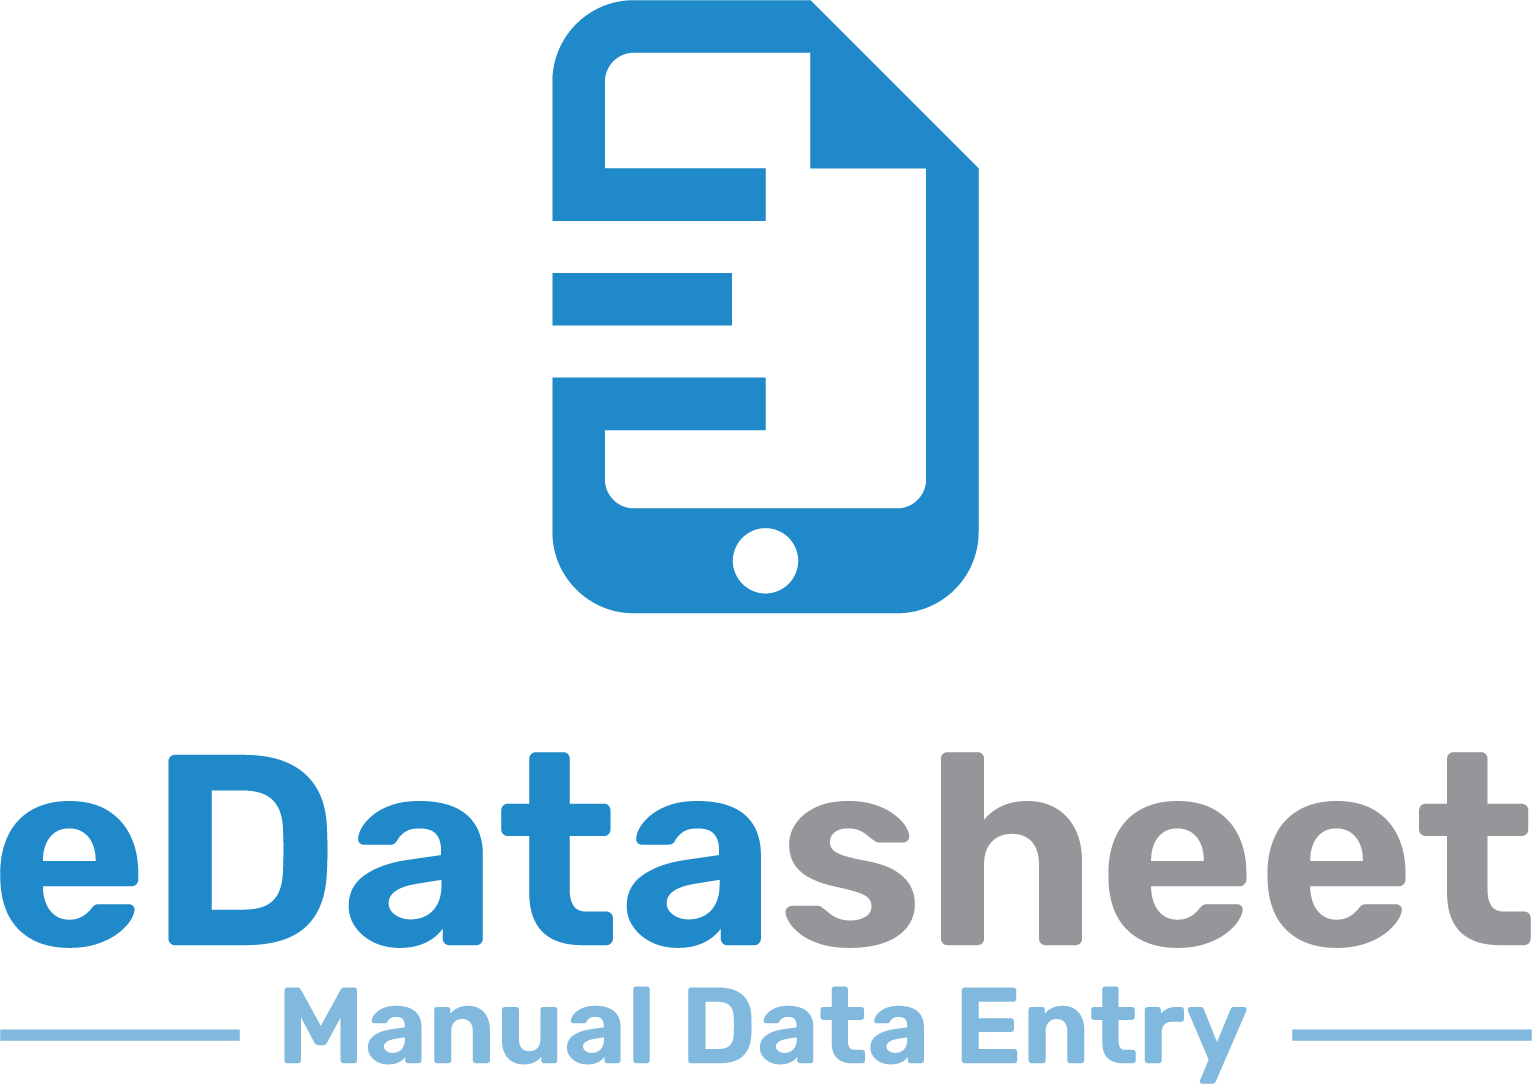 eDatasheet - Manual Data Entry to PI